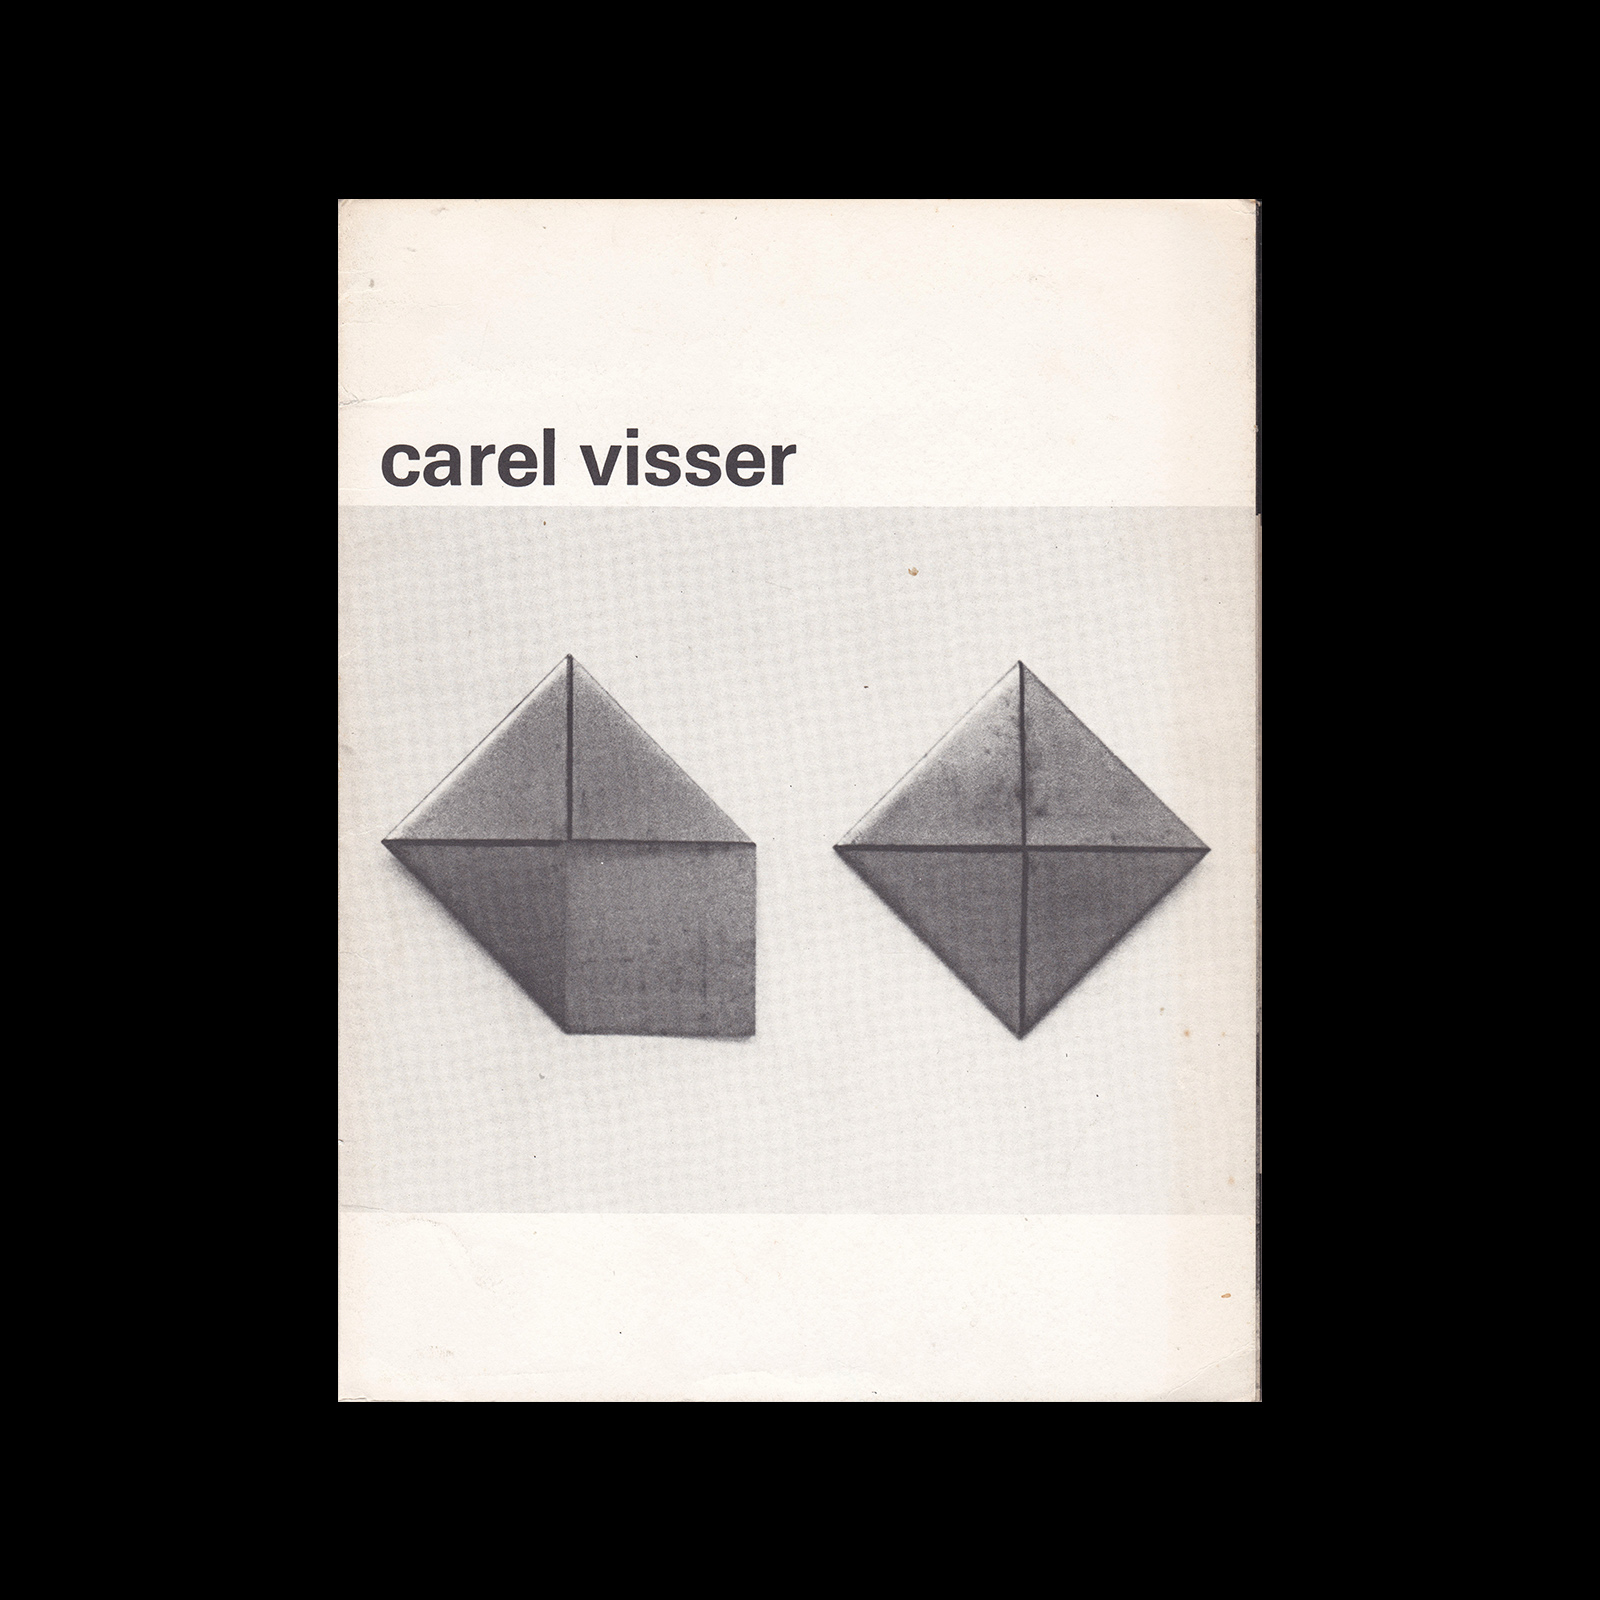 Carel Visser, Stedelijk Museum, 1972. Designed by Wim Crouwel